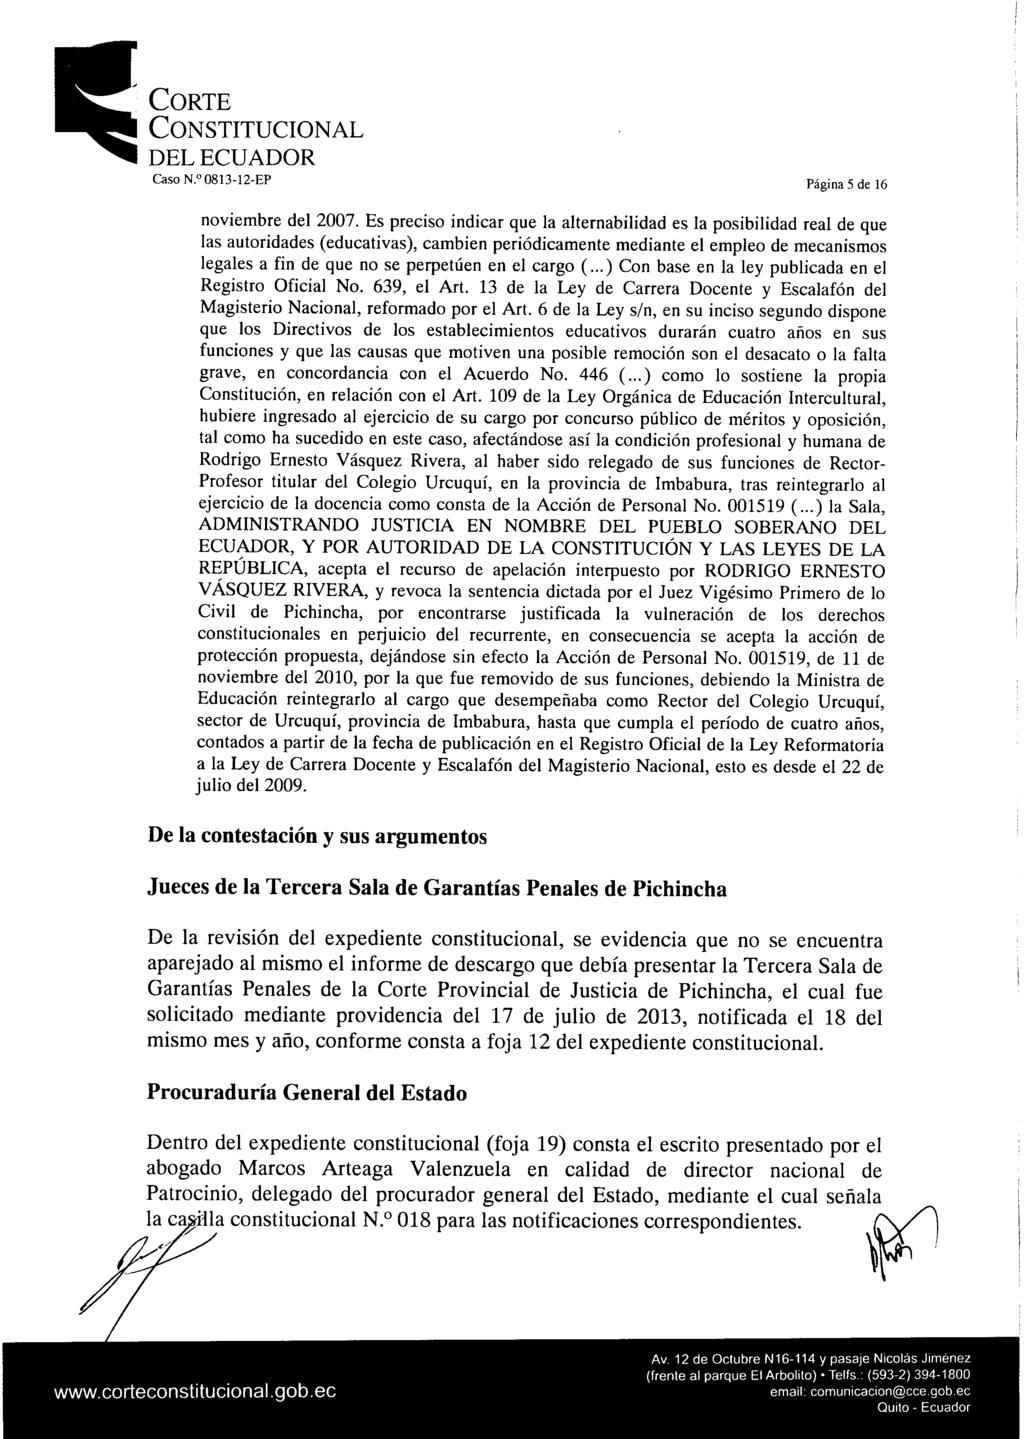 Corte Constitucional delecuador Caso N. 0813-12-EP Página 5 de 16 noviembre del 2007.